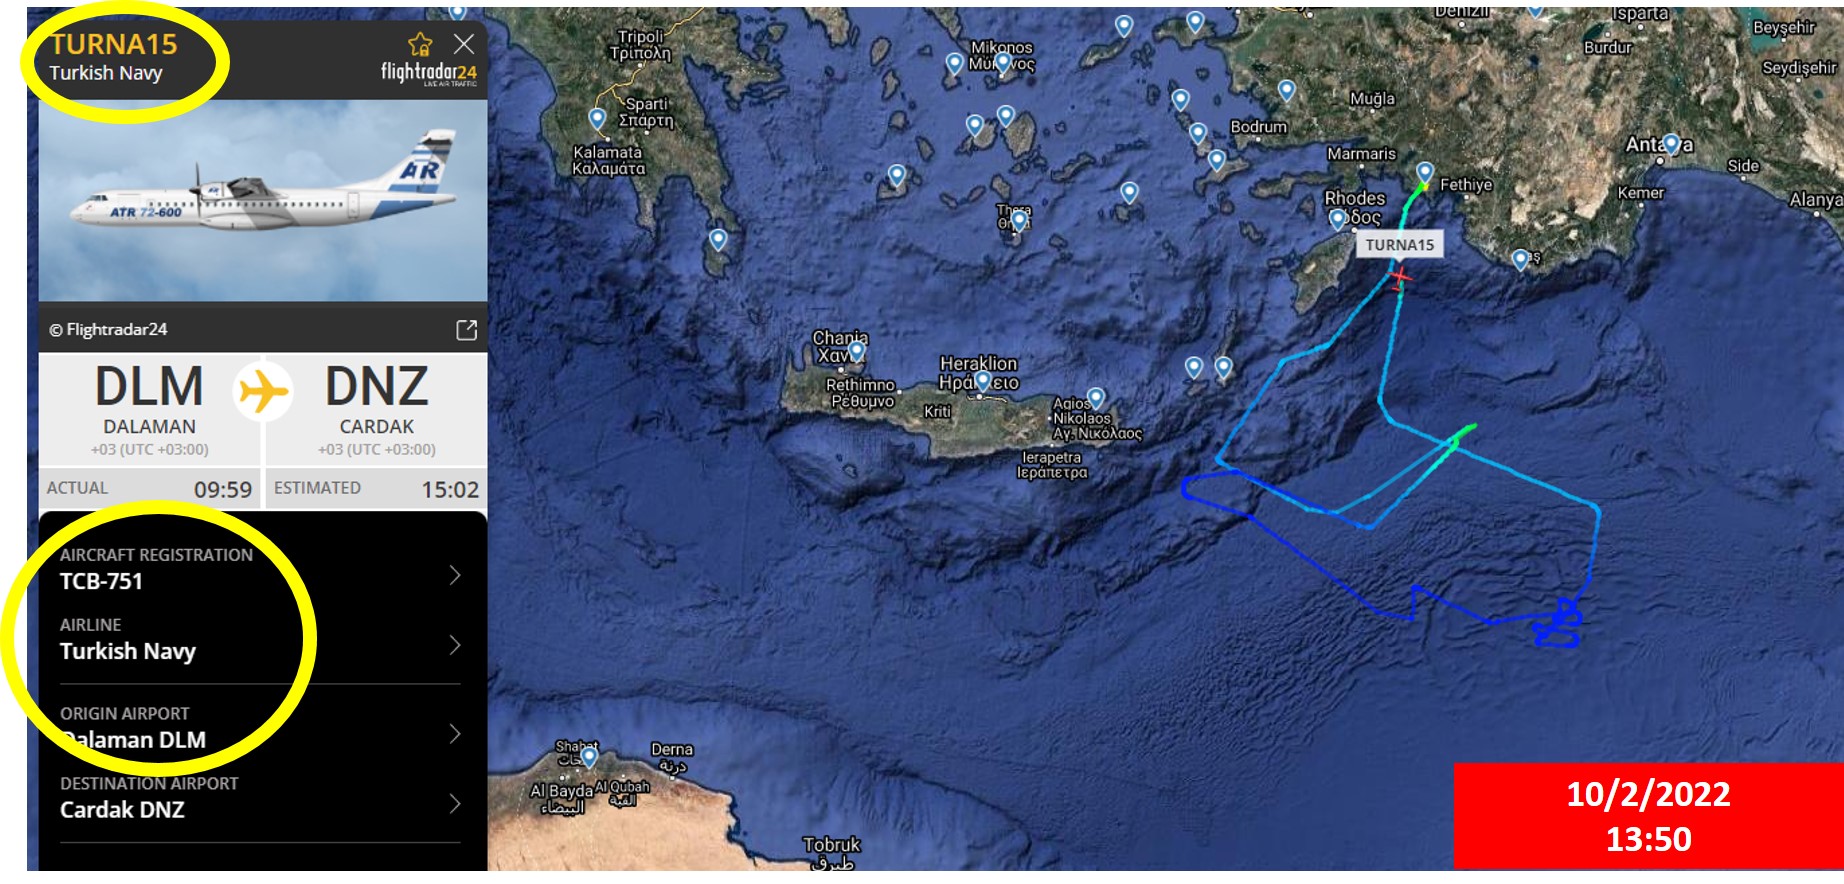 Τουρκικό αεροσκάφος ναυτικής συνεργασίας «σαρώνει» το νοτιοανατολικό Αιγαίο